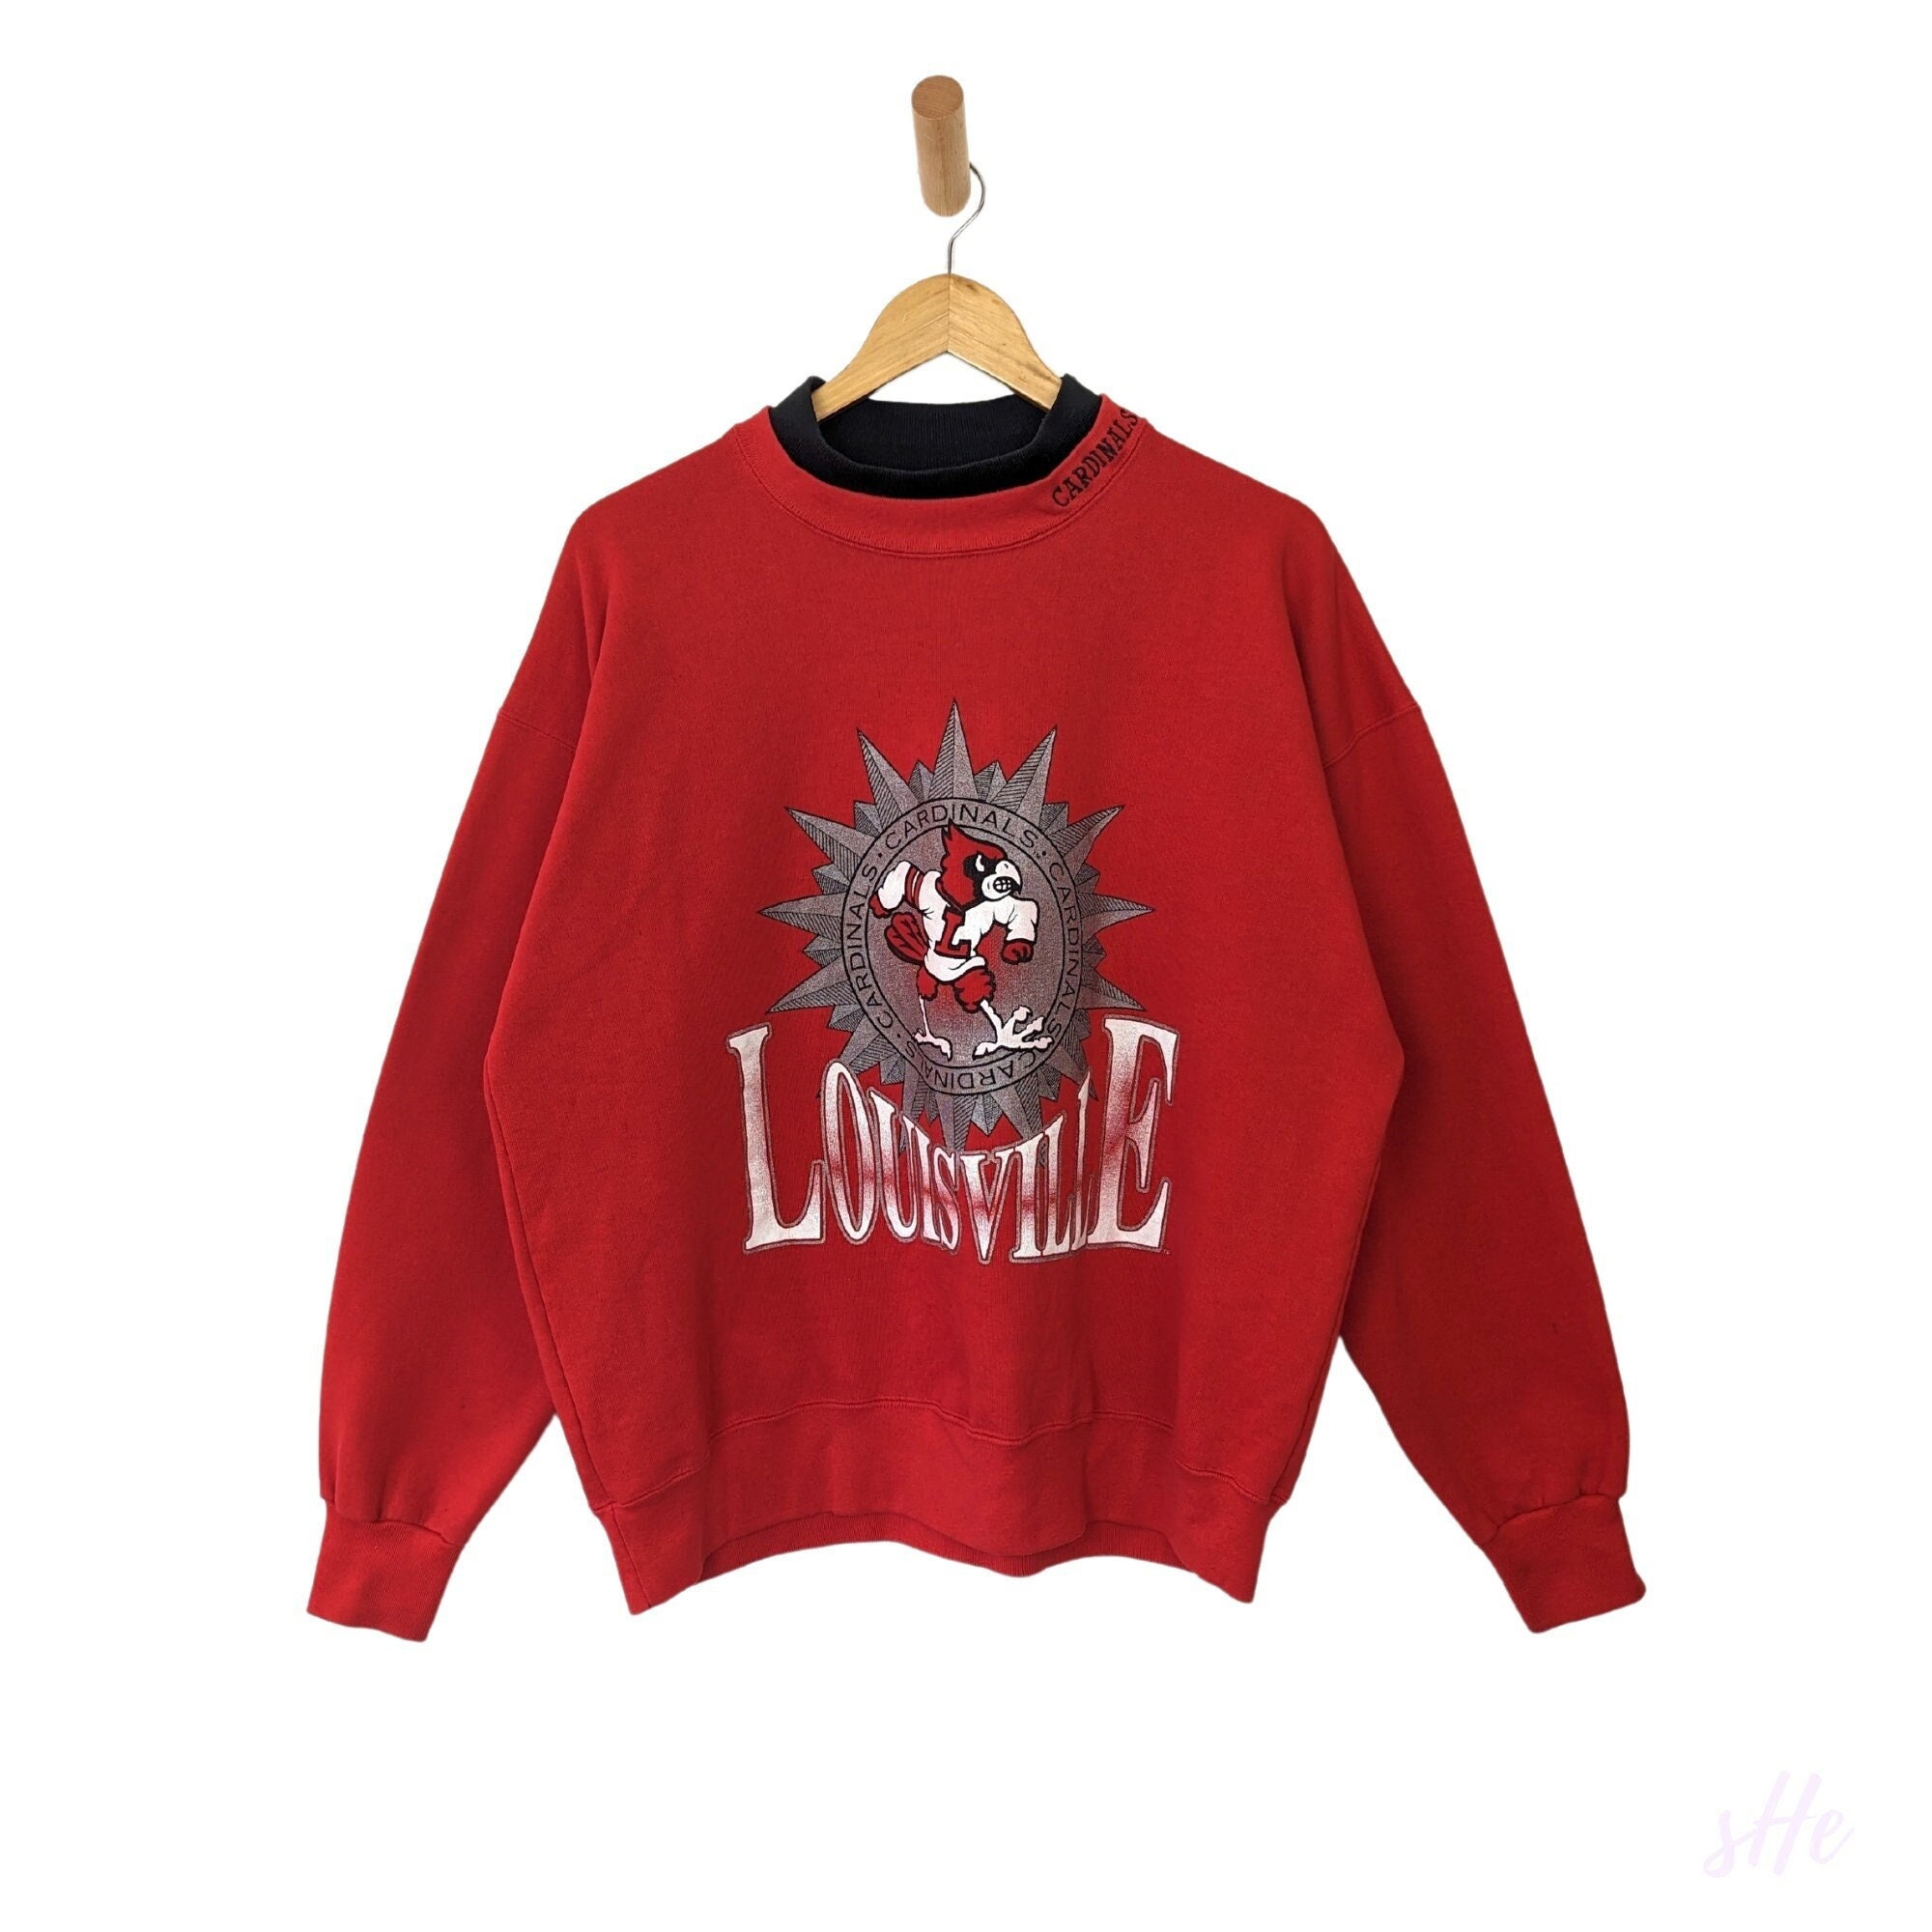 Louisville Cardinals mascot men's basketball shirt, hoodie, sweater, long  sleeve and tank top